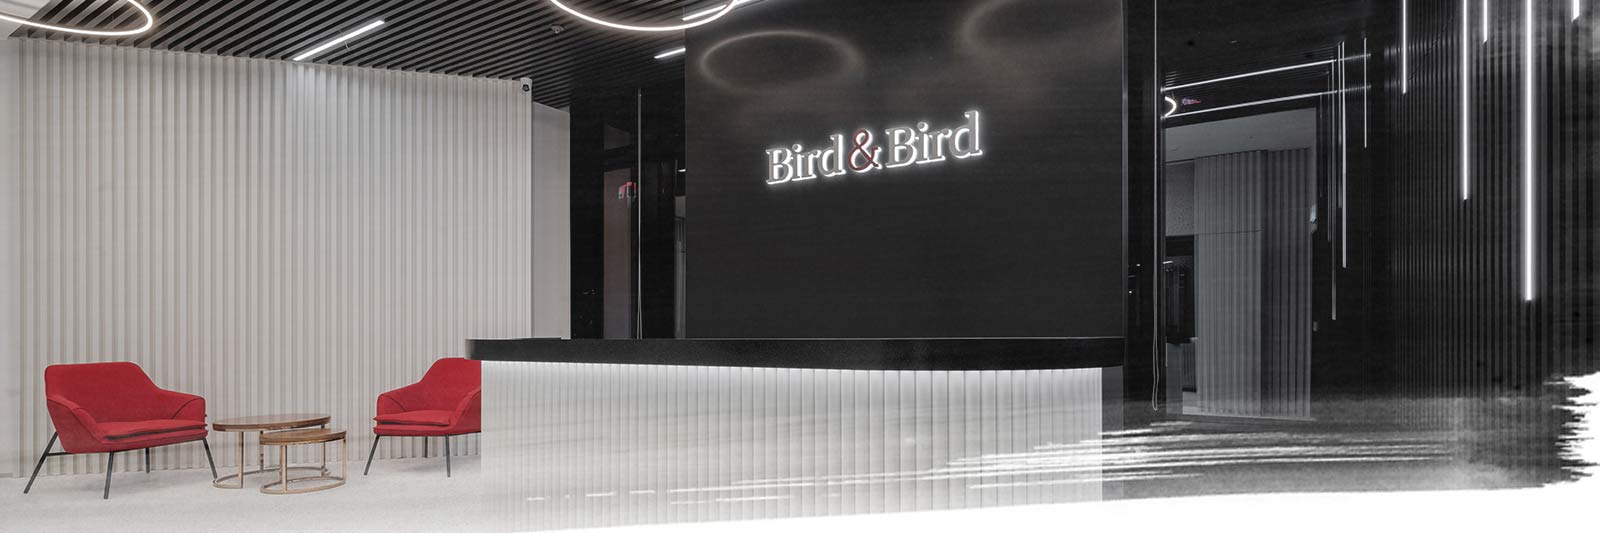 Bird & Bird’s Hong Kong office